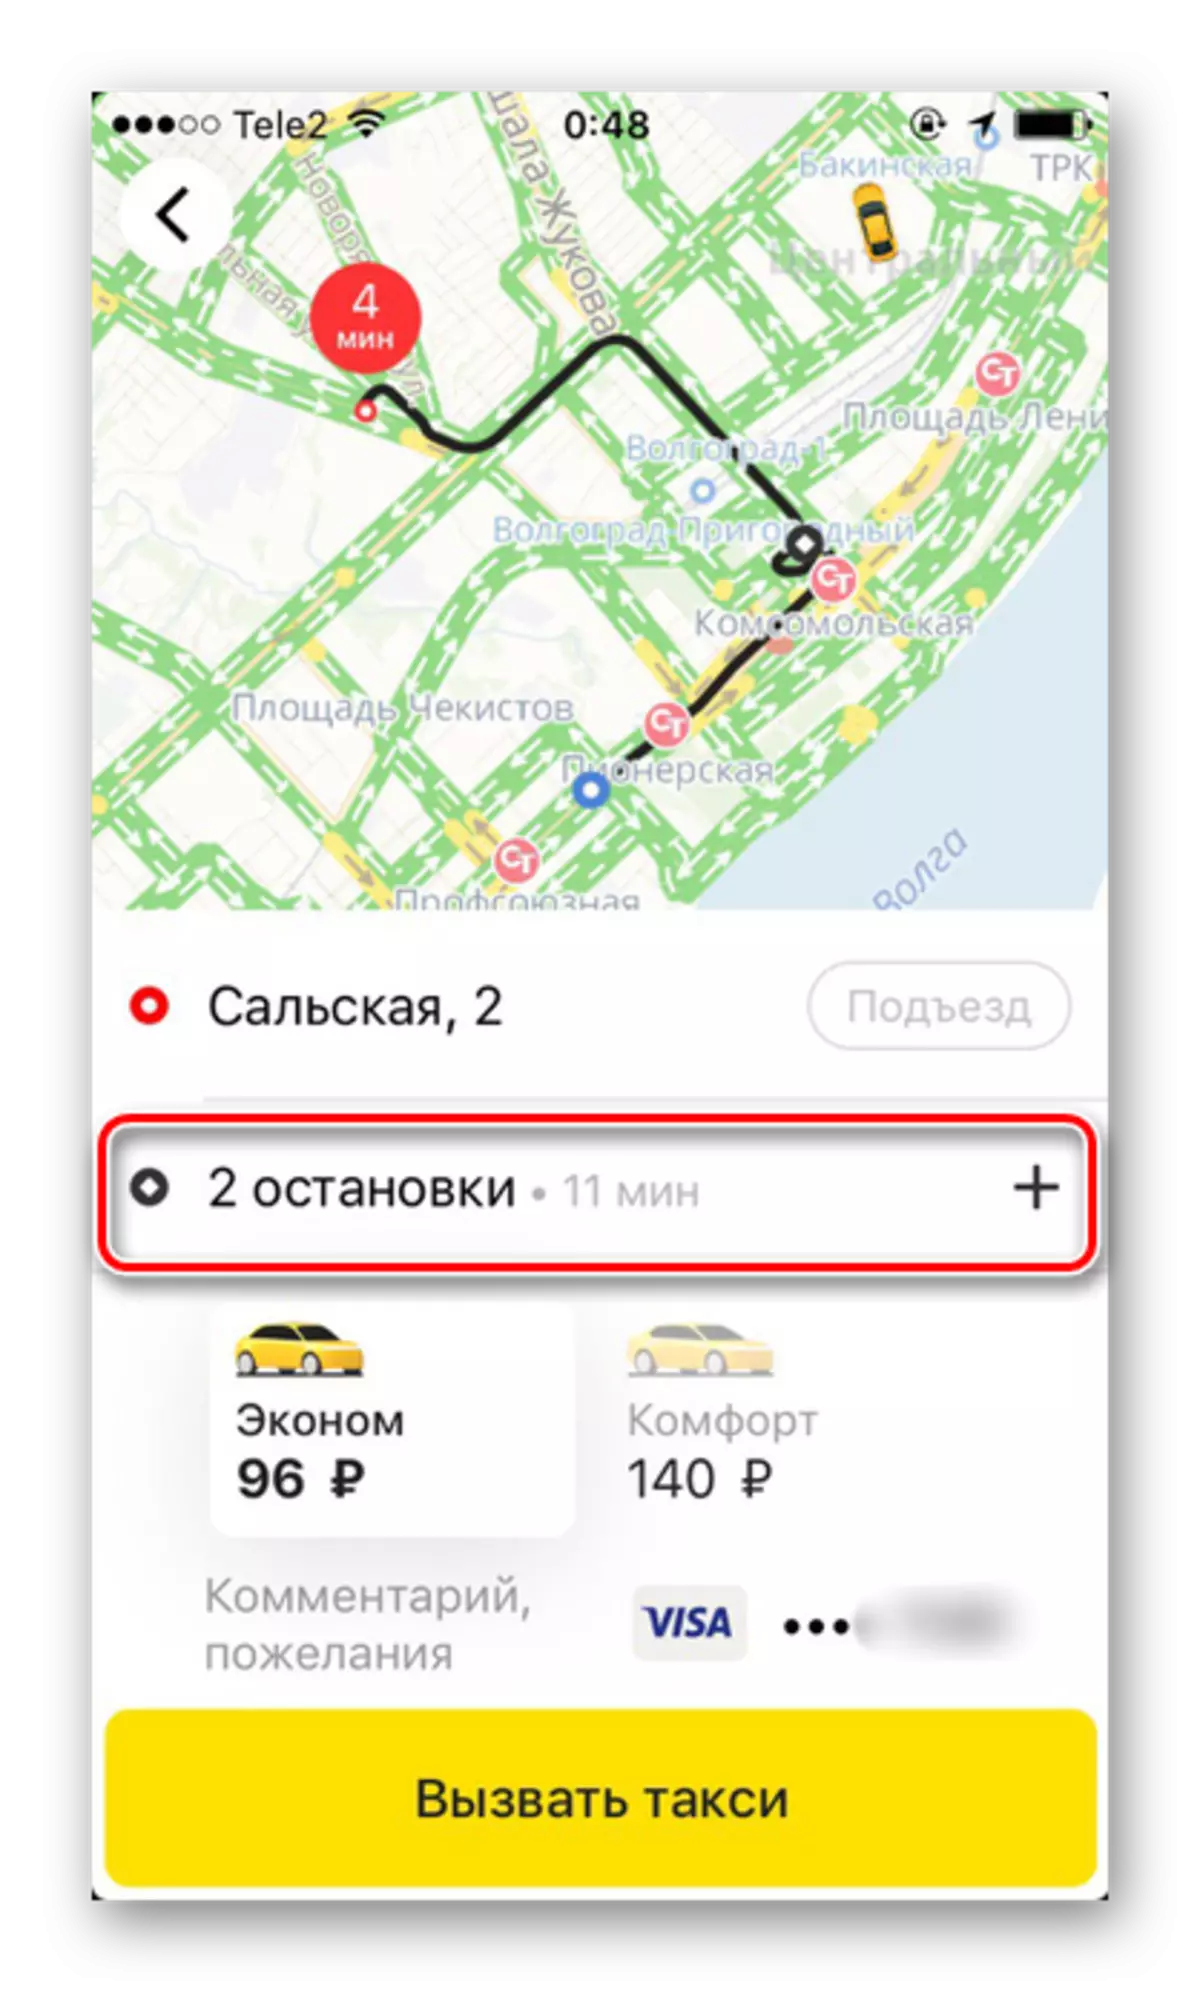 IPhone Yandex.Taxi tətbiqi bir taksi sifariş zaman birdən çox ilə kompleks marşrutu dayandırır